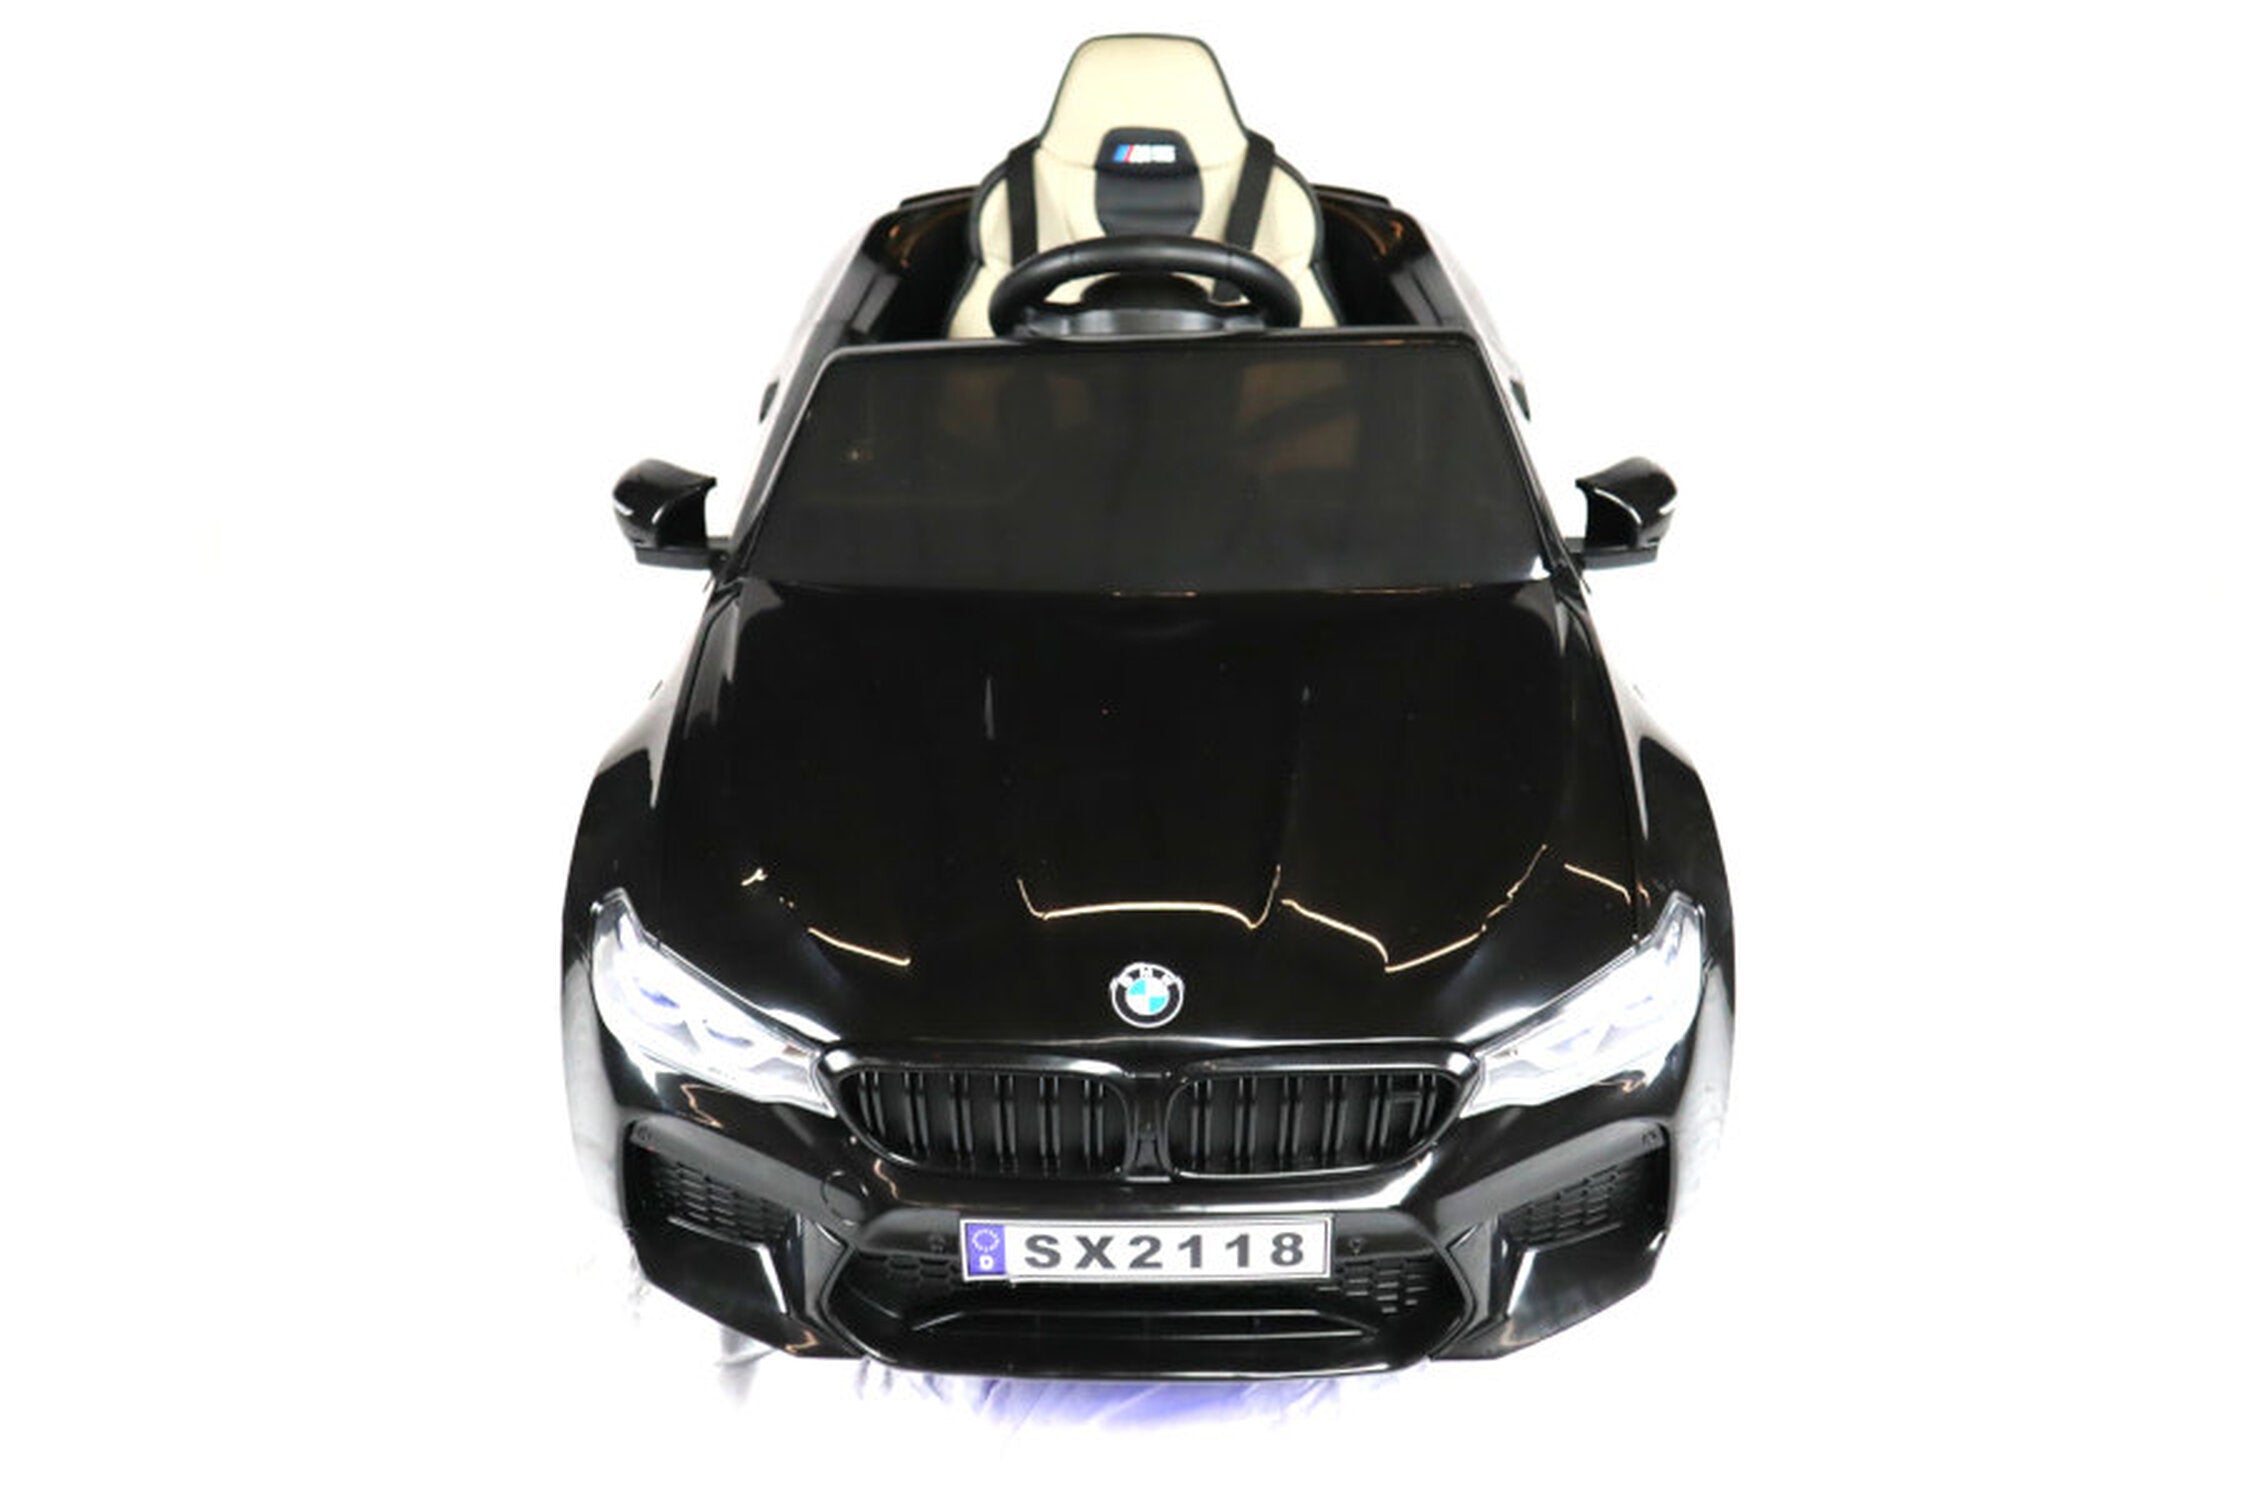 TPFLiving Elektro-Kinderauto BMW M5 Drift Version schwarz - Kinderauto - Elektroauto - Ledersitz und Sicherheitsgurt